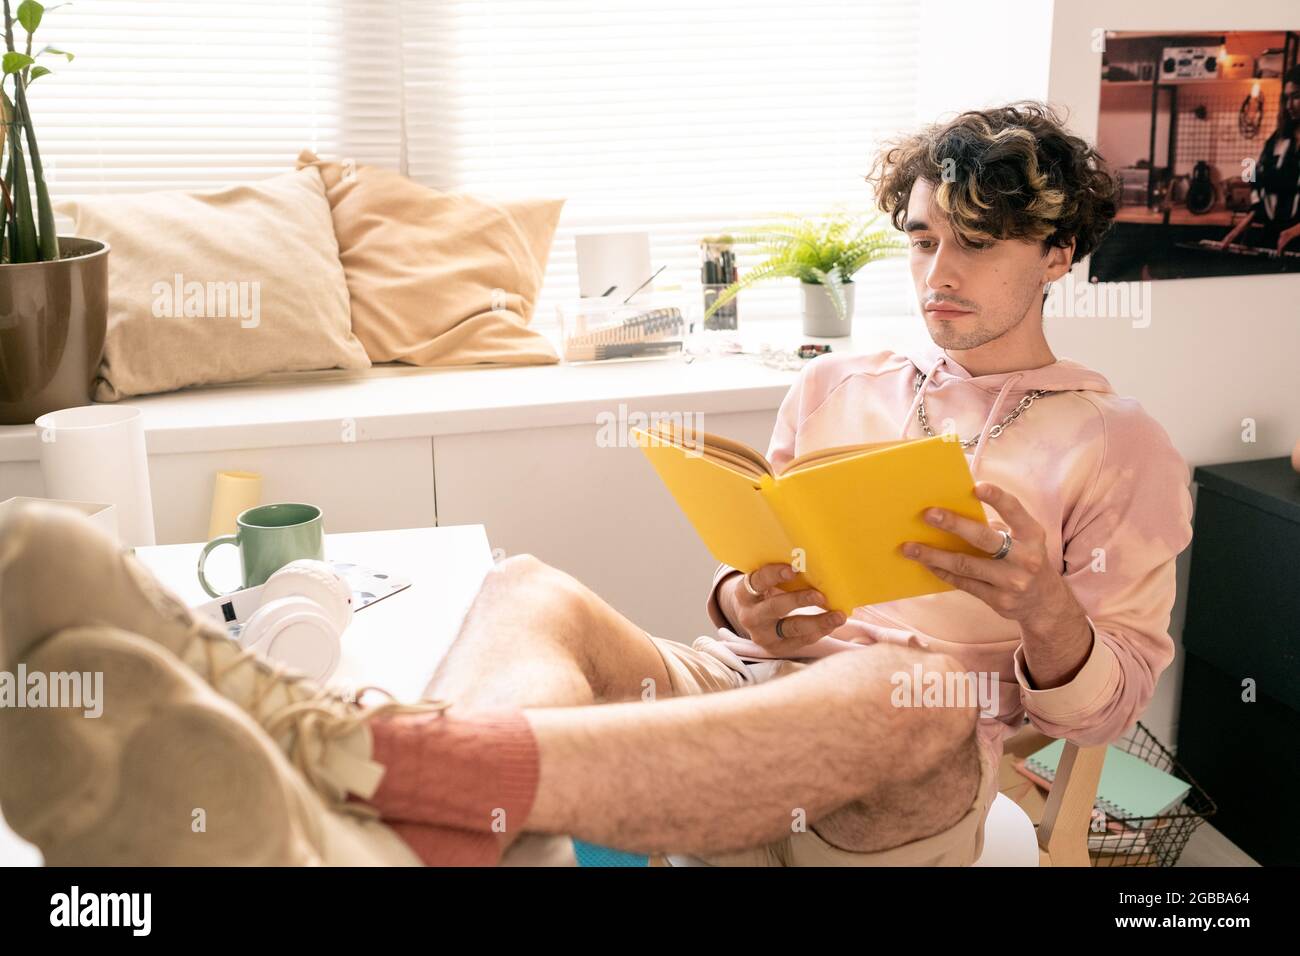 Erholsamer Teenager, der auf einem Stuhl saß und mit seinen Beinen auf dem Schreibtisch ein Buch las Stockfoto